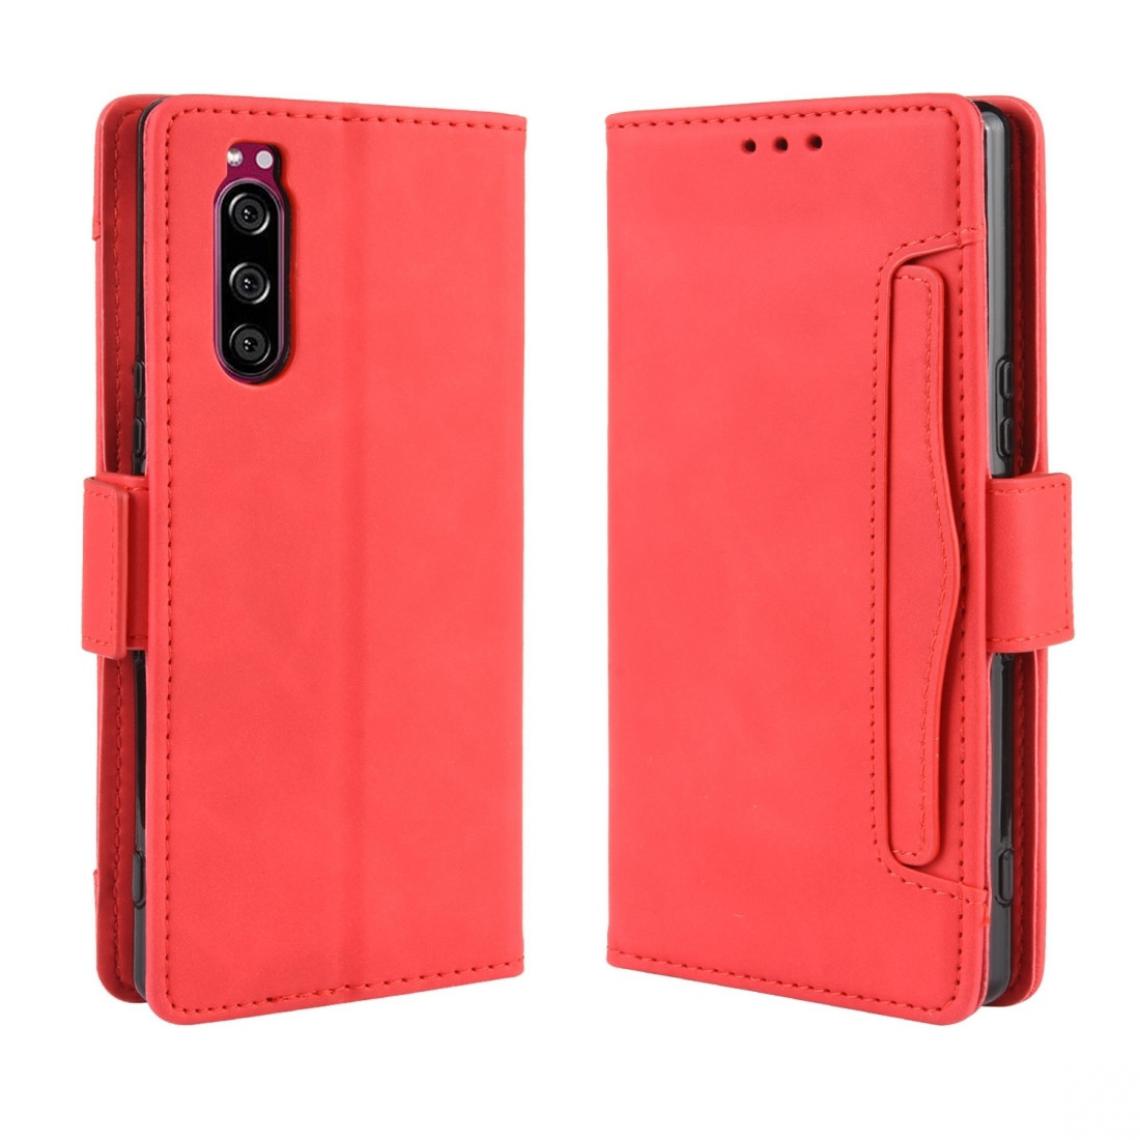 Wewoo - Housse Coque Pour Sony Xperia 5 Etui en cuir de modèle de portefeuille style skin avec fente carte séparée rouge - Coque, étui smartphone